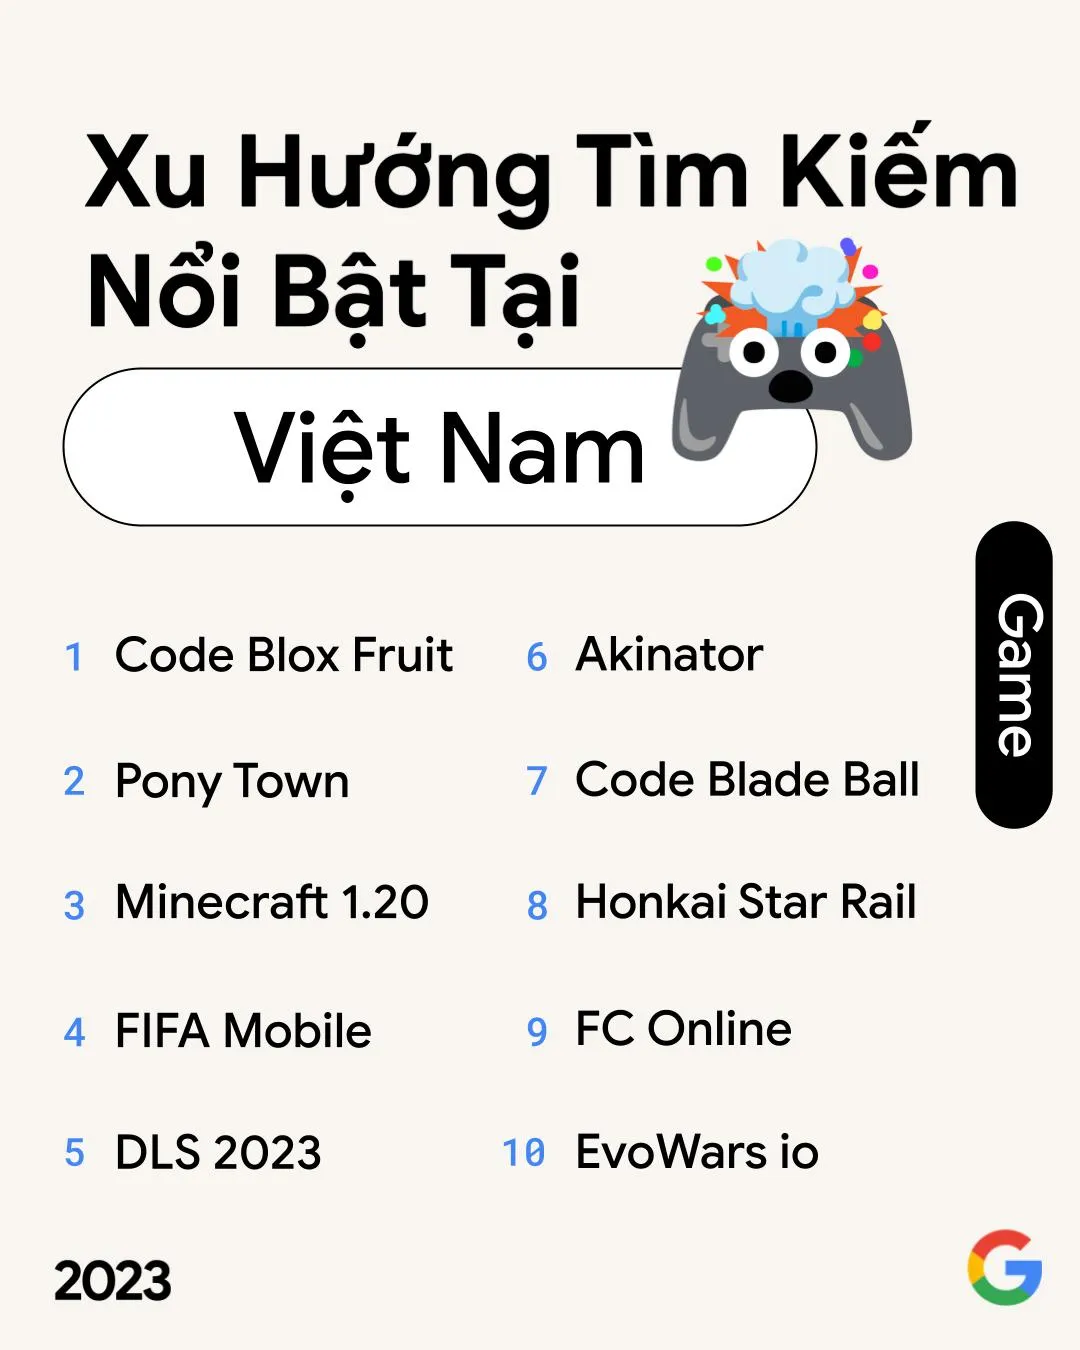 Google công bố xu hướng tìm kiếm nổi bật năm 2023 tại Việt Nam